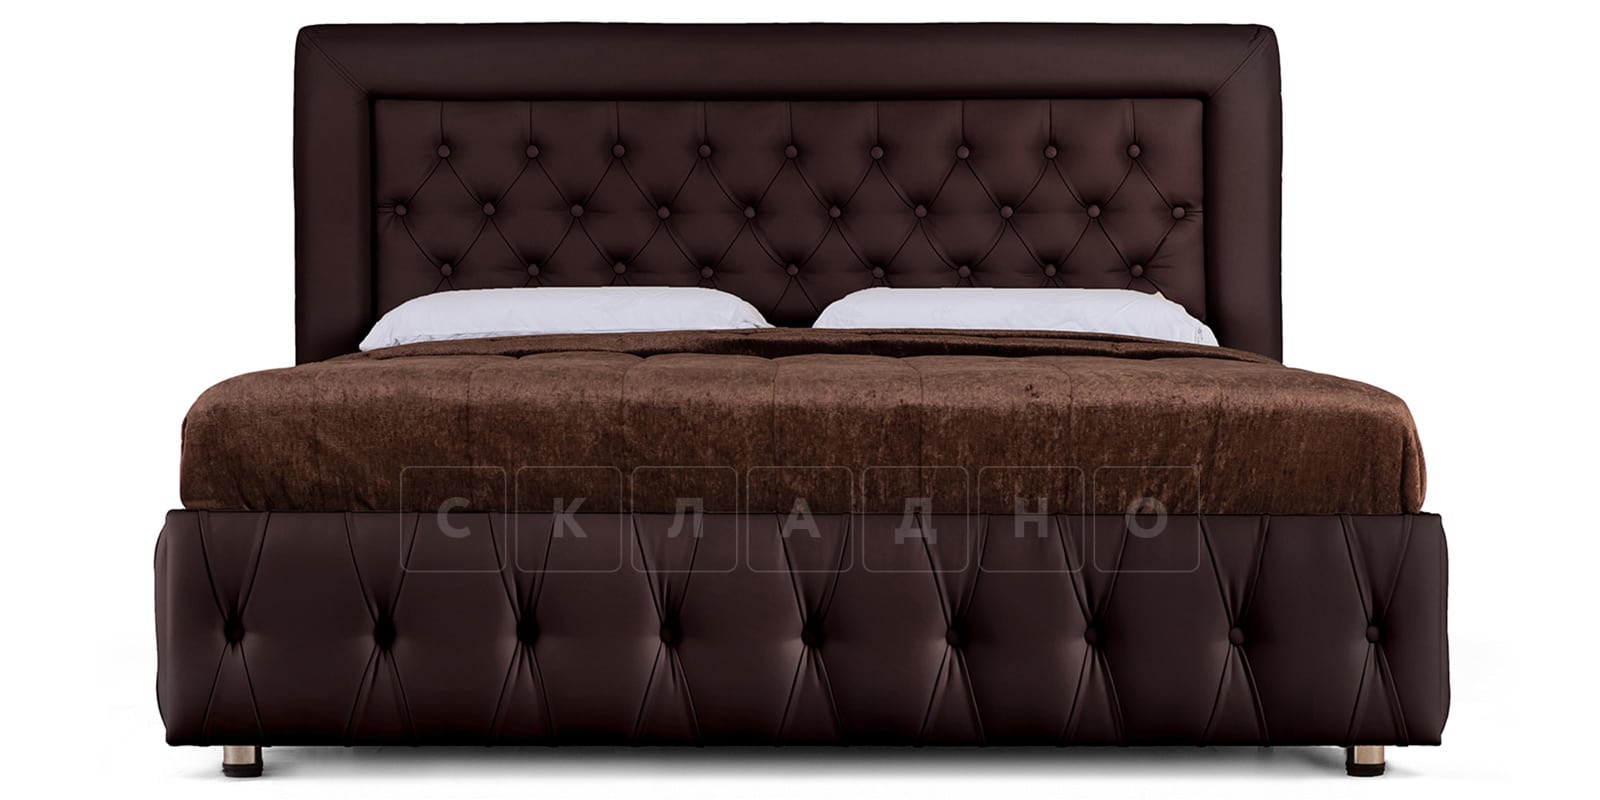 Мягкая кровать Малибу 160см экокожа шоколадного цвета вариант 7 фото 2 | интернет-магазин Складно